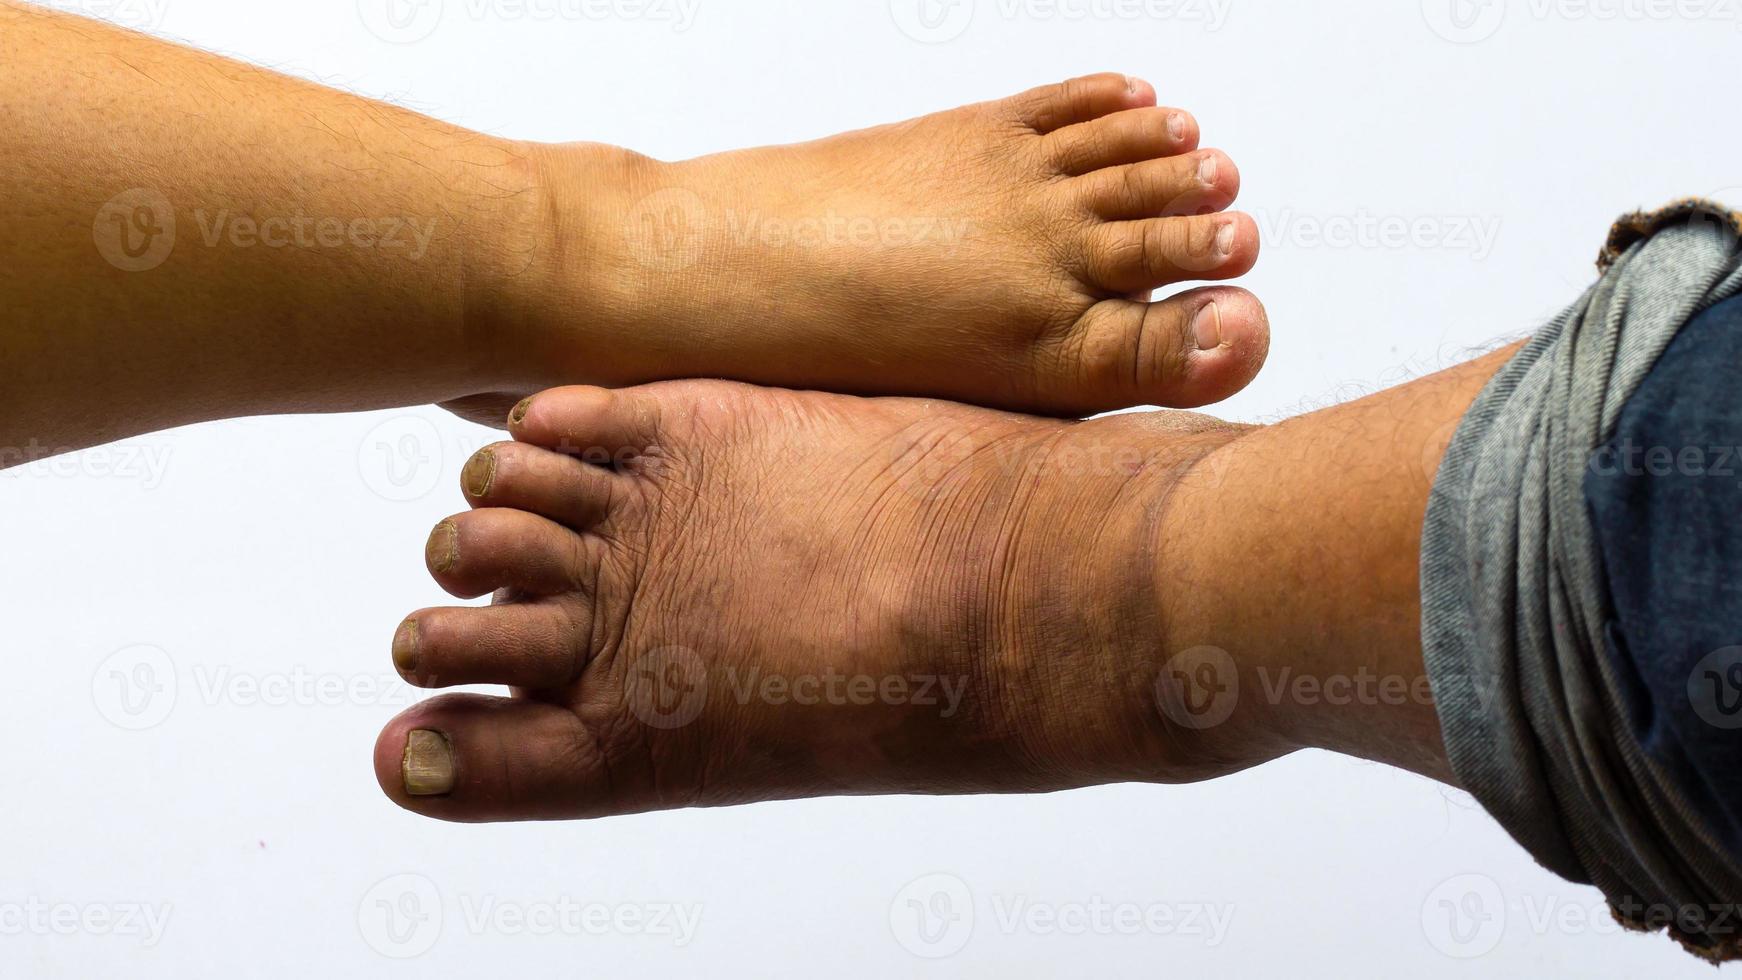 sopra i piedi delle persone obese. foto